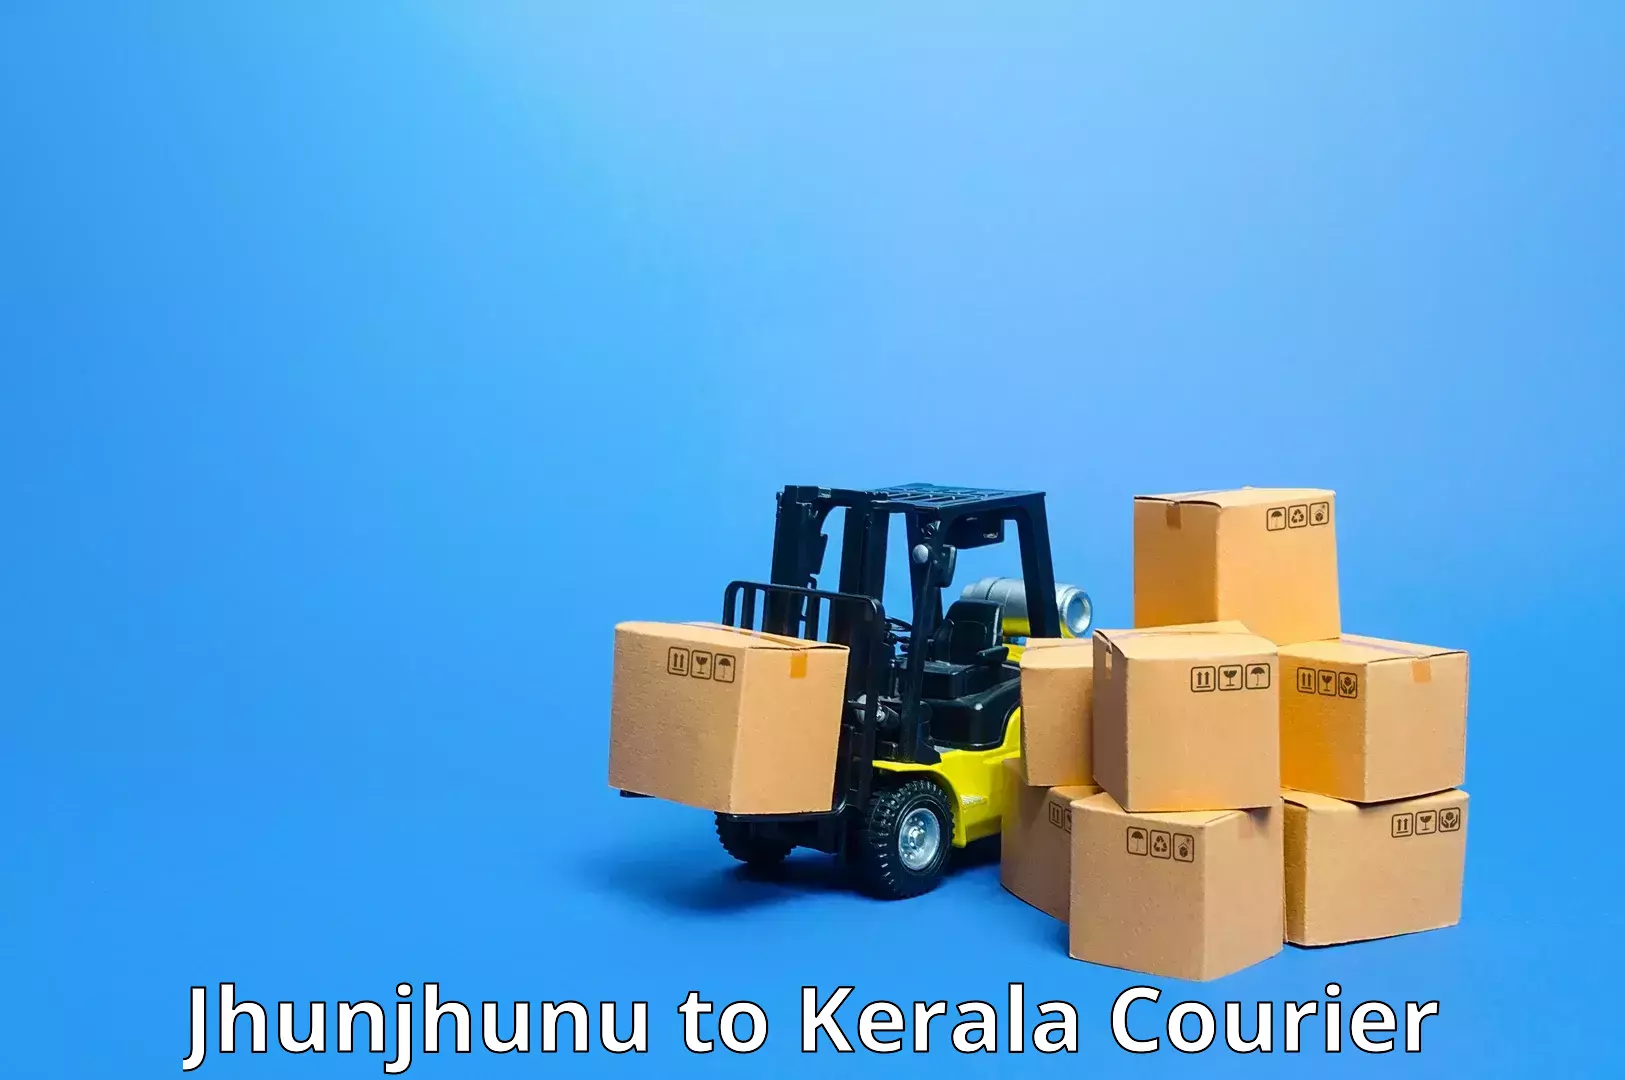 Courier insurance Jhunjhunu to Chengannur